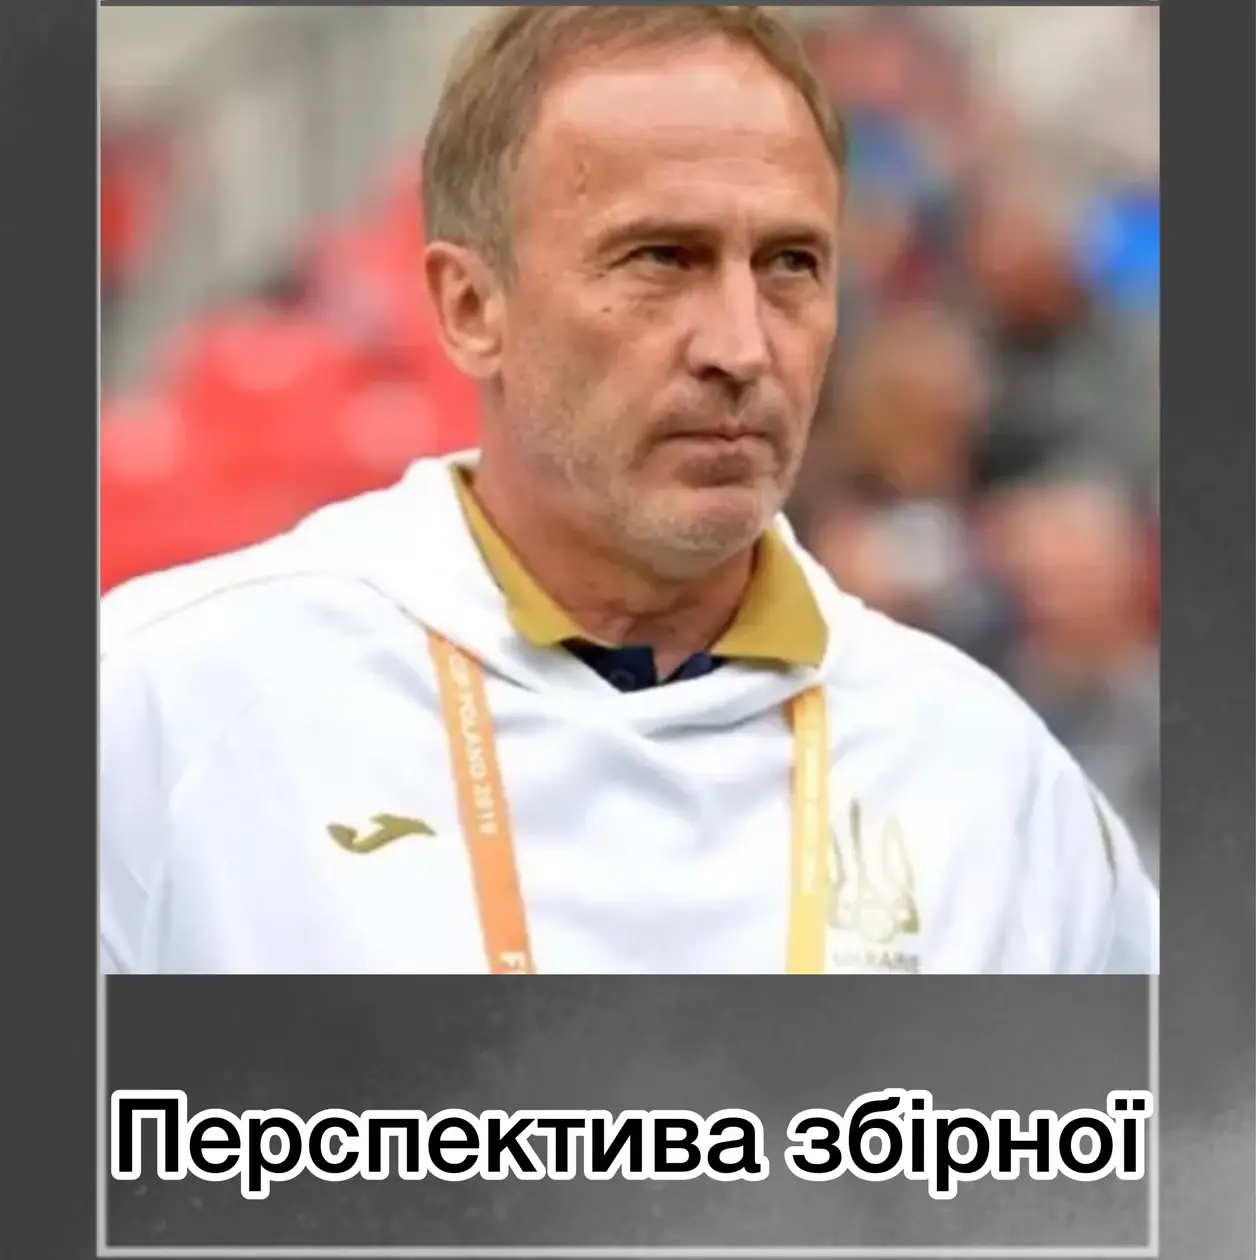 Чи є перспектива у збірної України з нинішнім тренером?